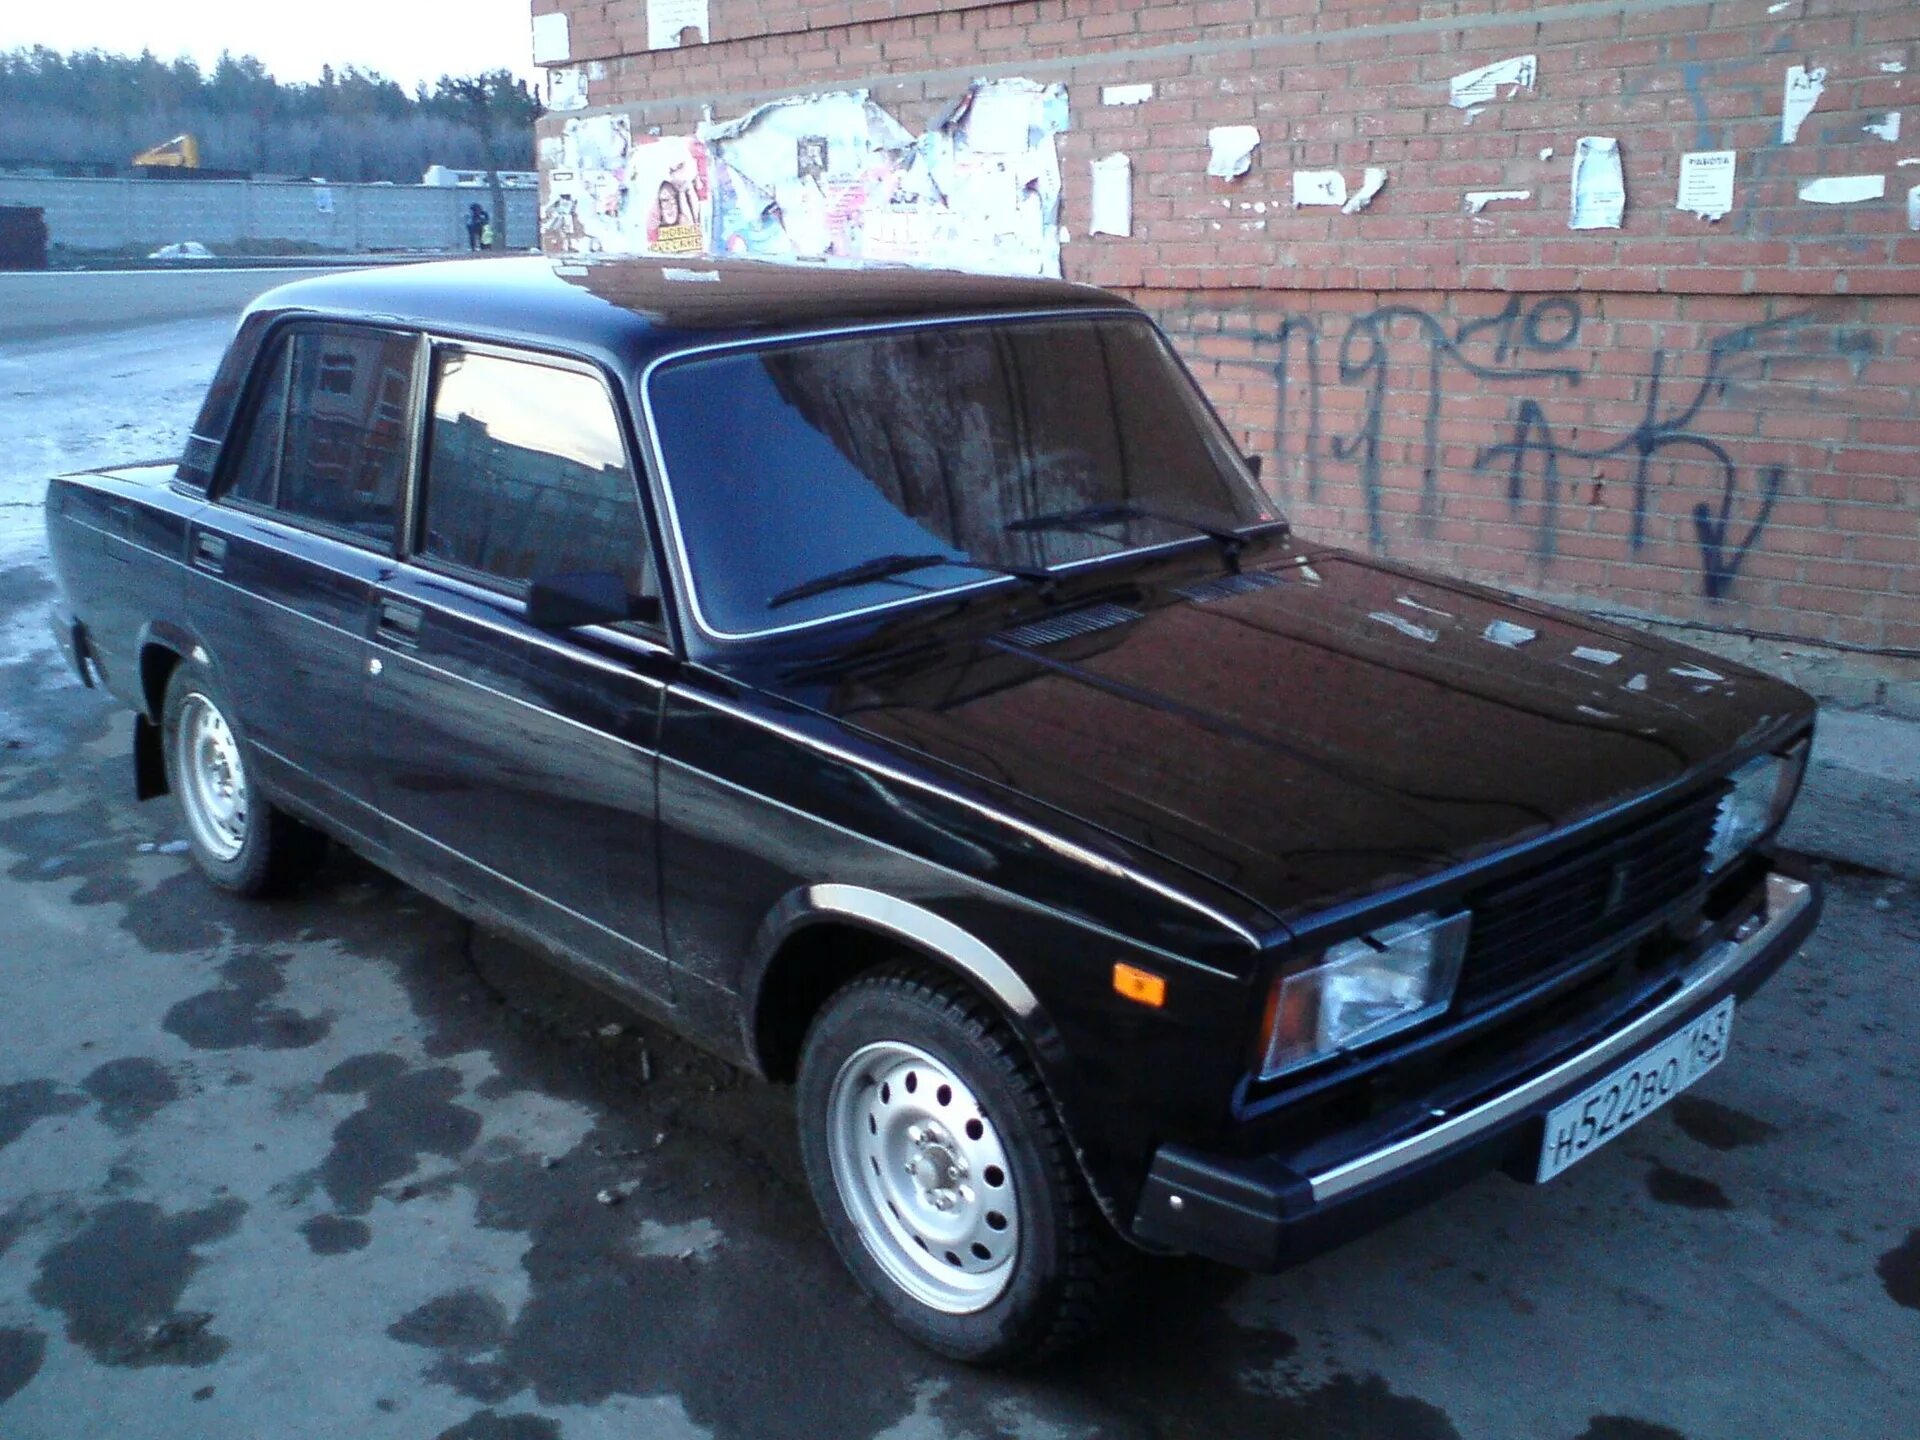 ВАЗ 21074. ВАЗ 2105 1991. Жигули ВАЗ 2107 за 15000 рублей. ВАЗ 2105 черная.